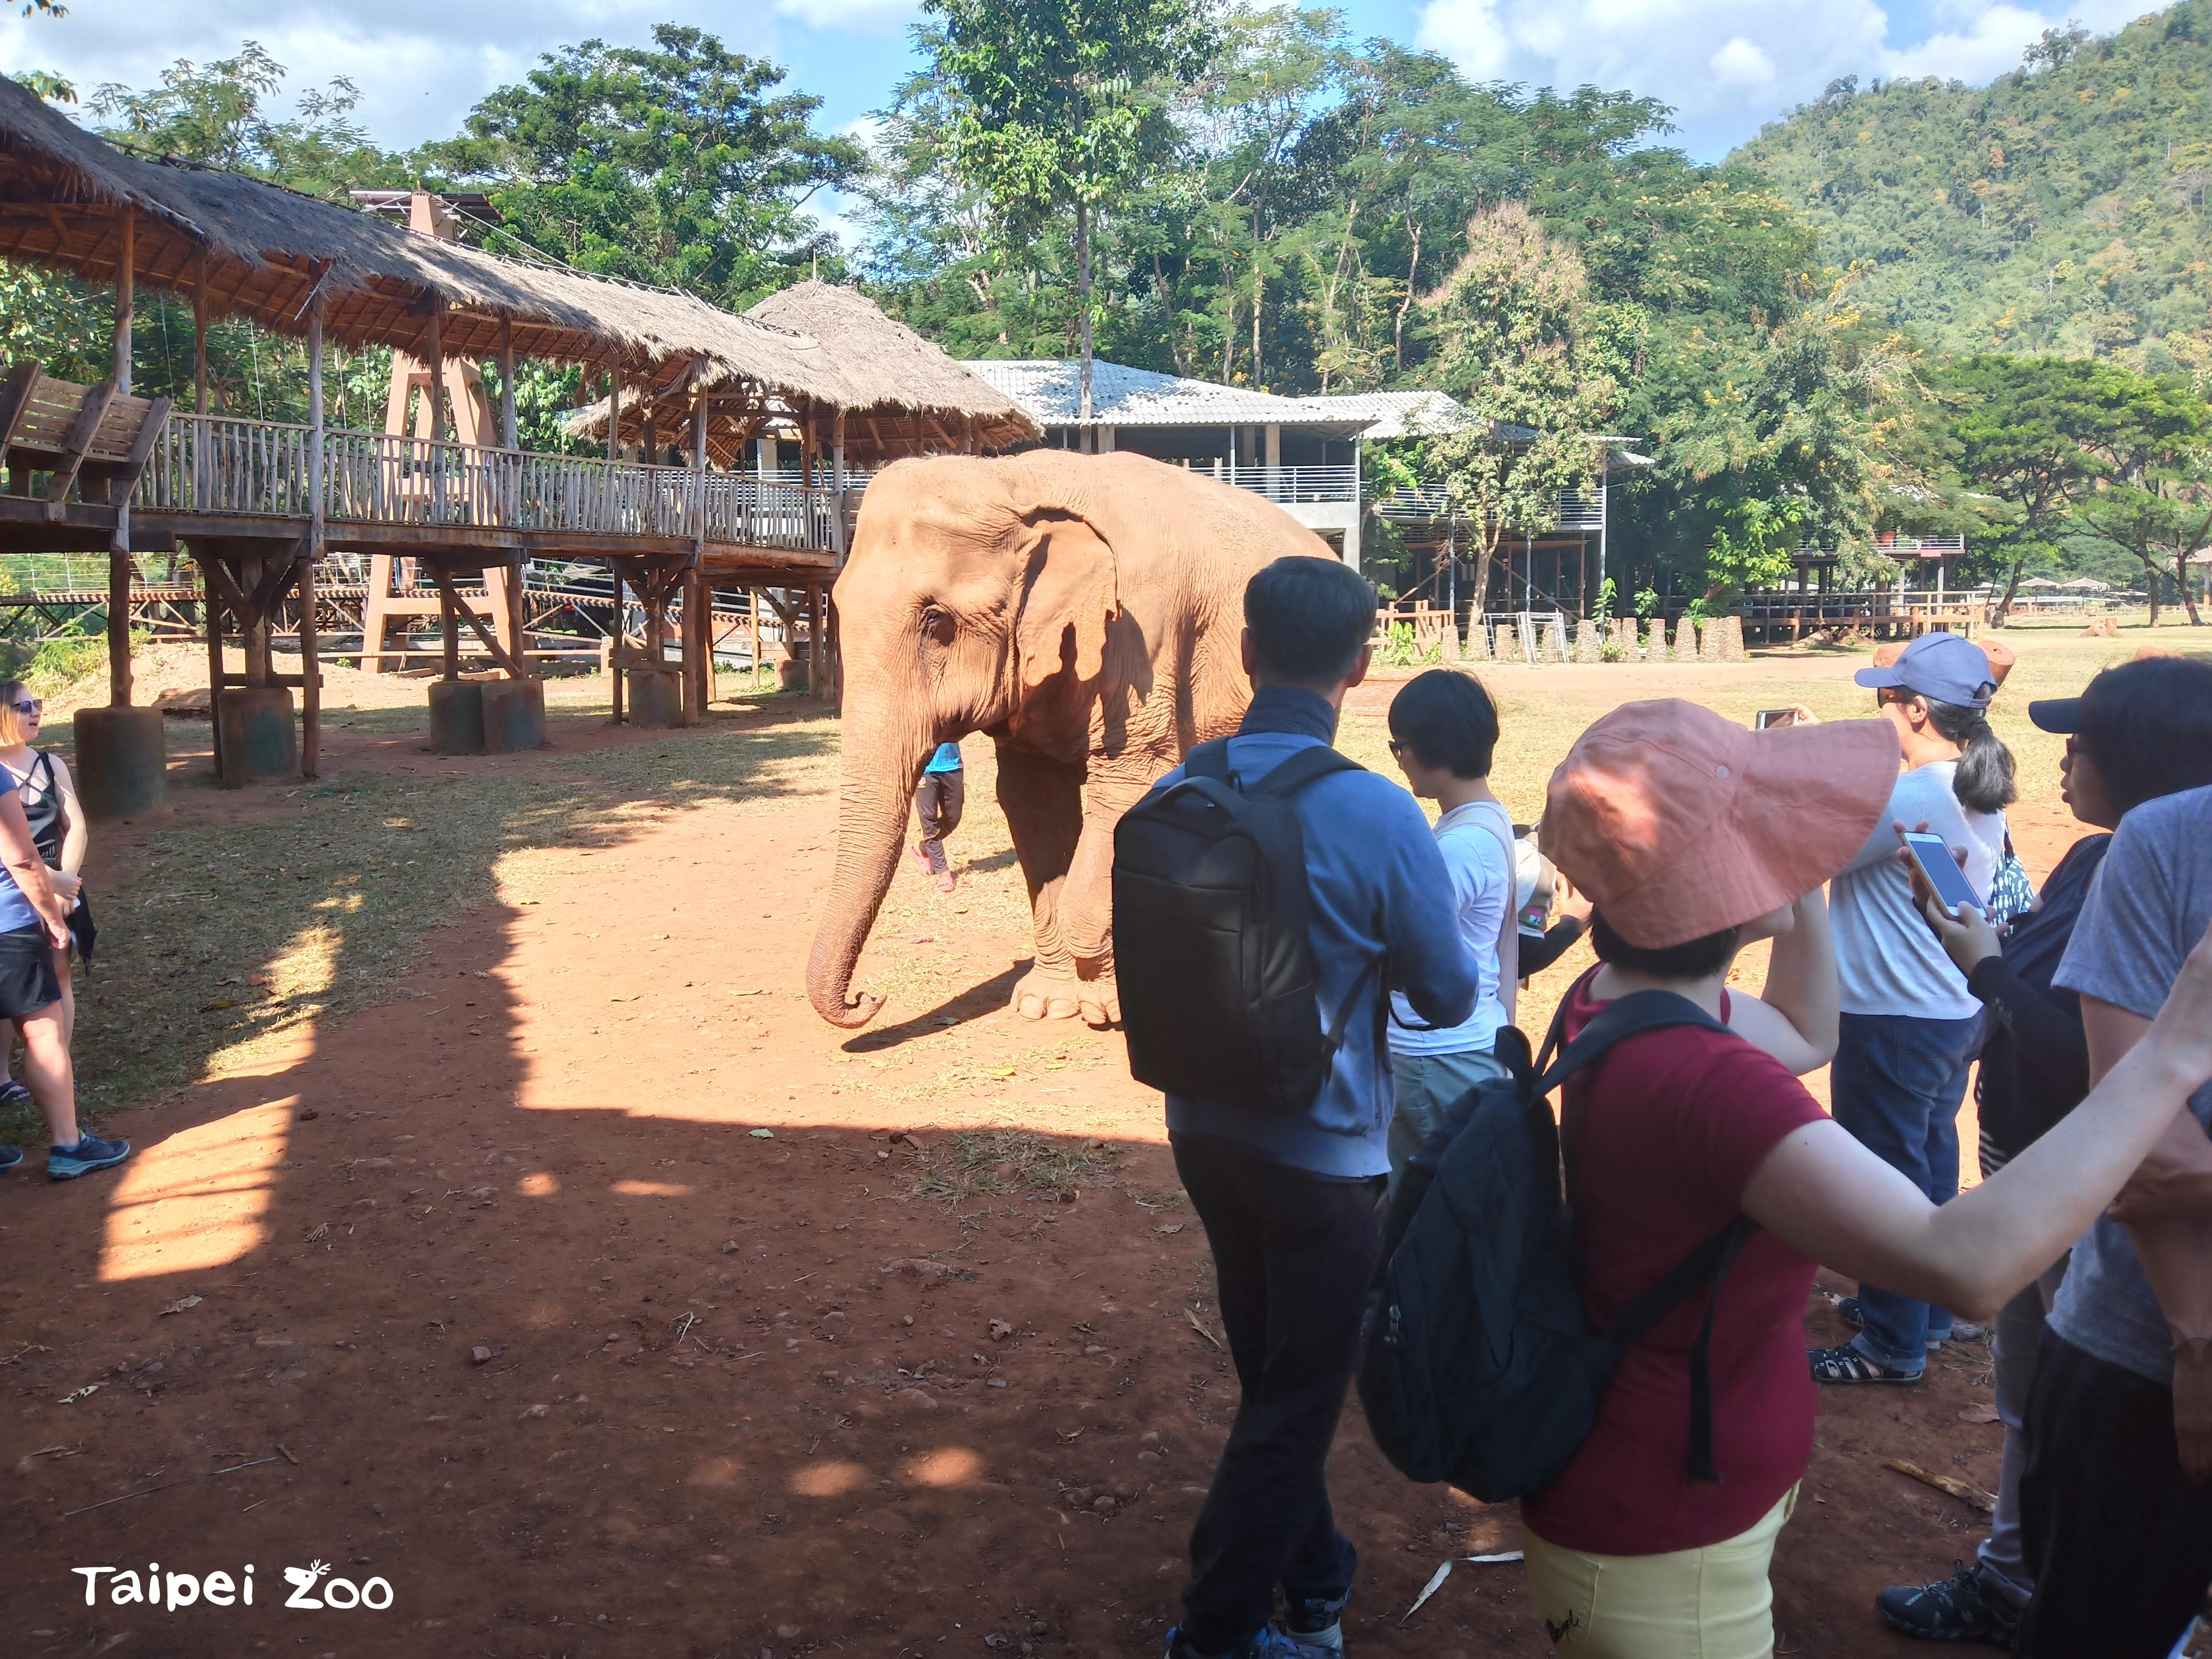 大象保育中心參訪： 一個可以近距離觀察大象，互相理解和尊重大象的保育公園。